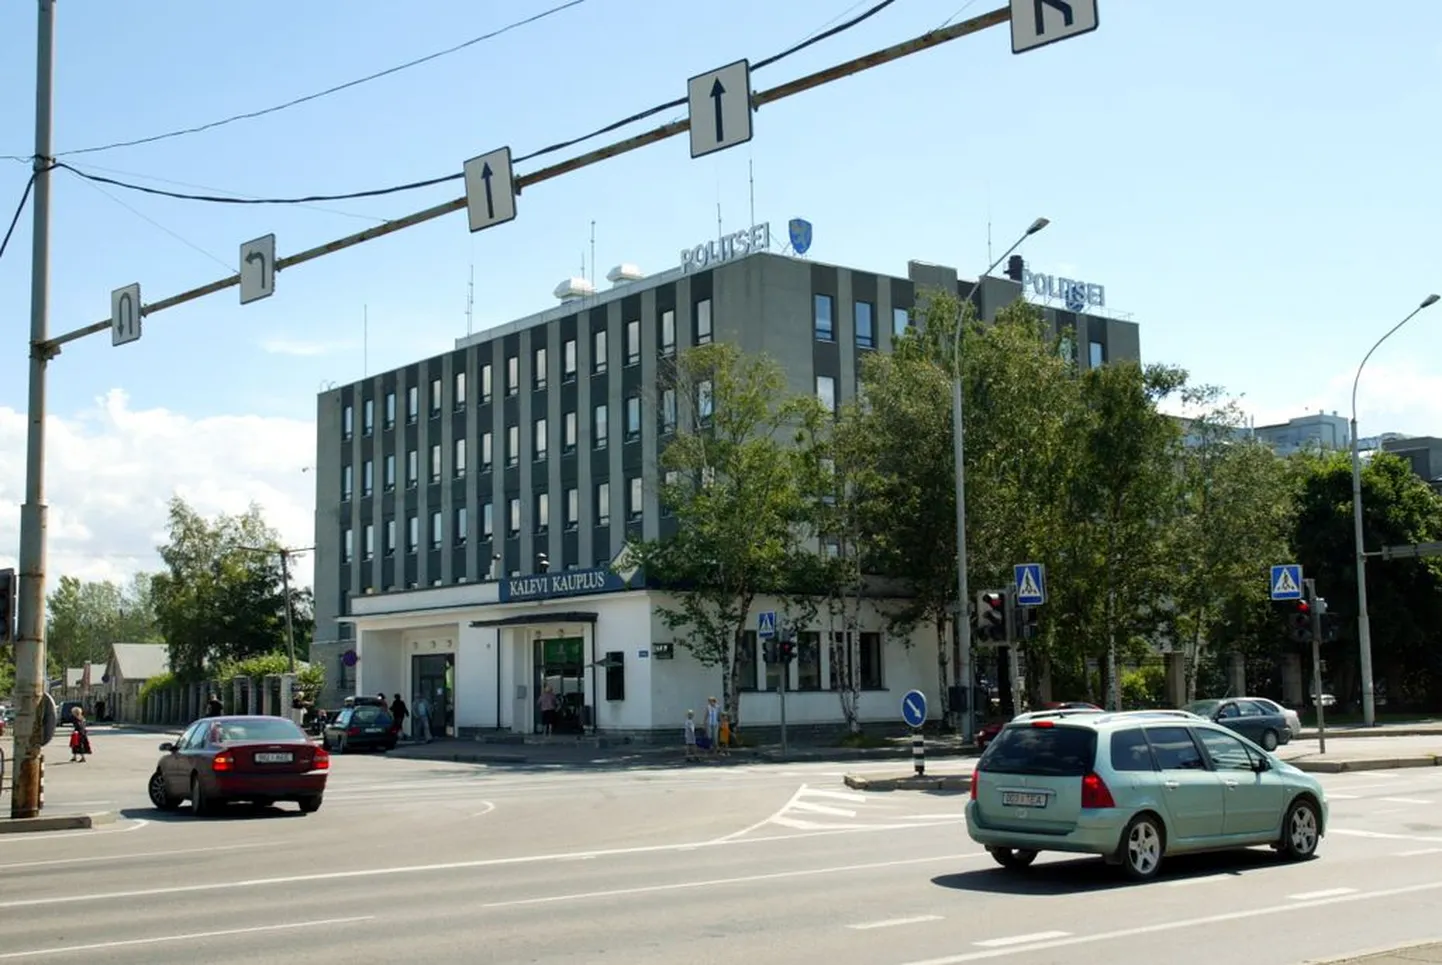 Дом, где раньше располагалась конфетная фабрика "Калев", а теперь находится Департамент полиции и погранохраны и Пыхьяская префектура.